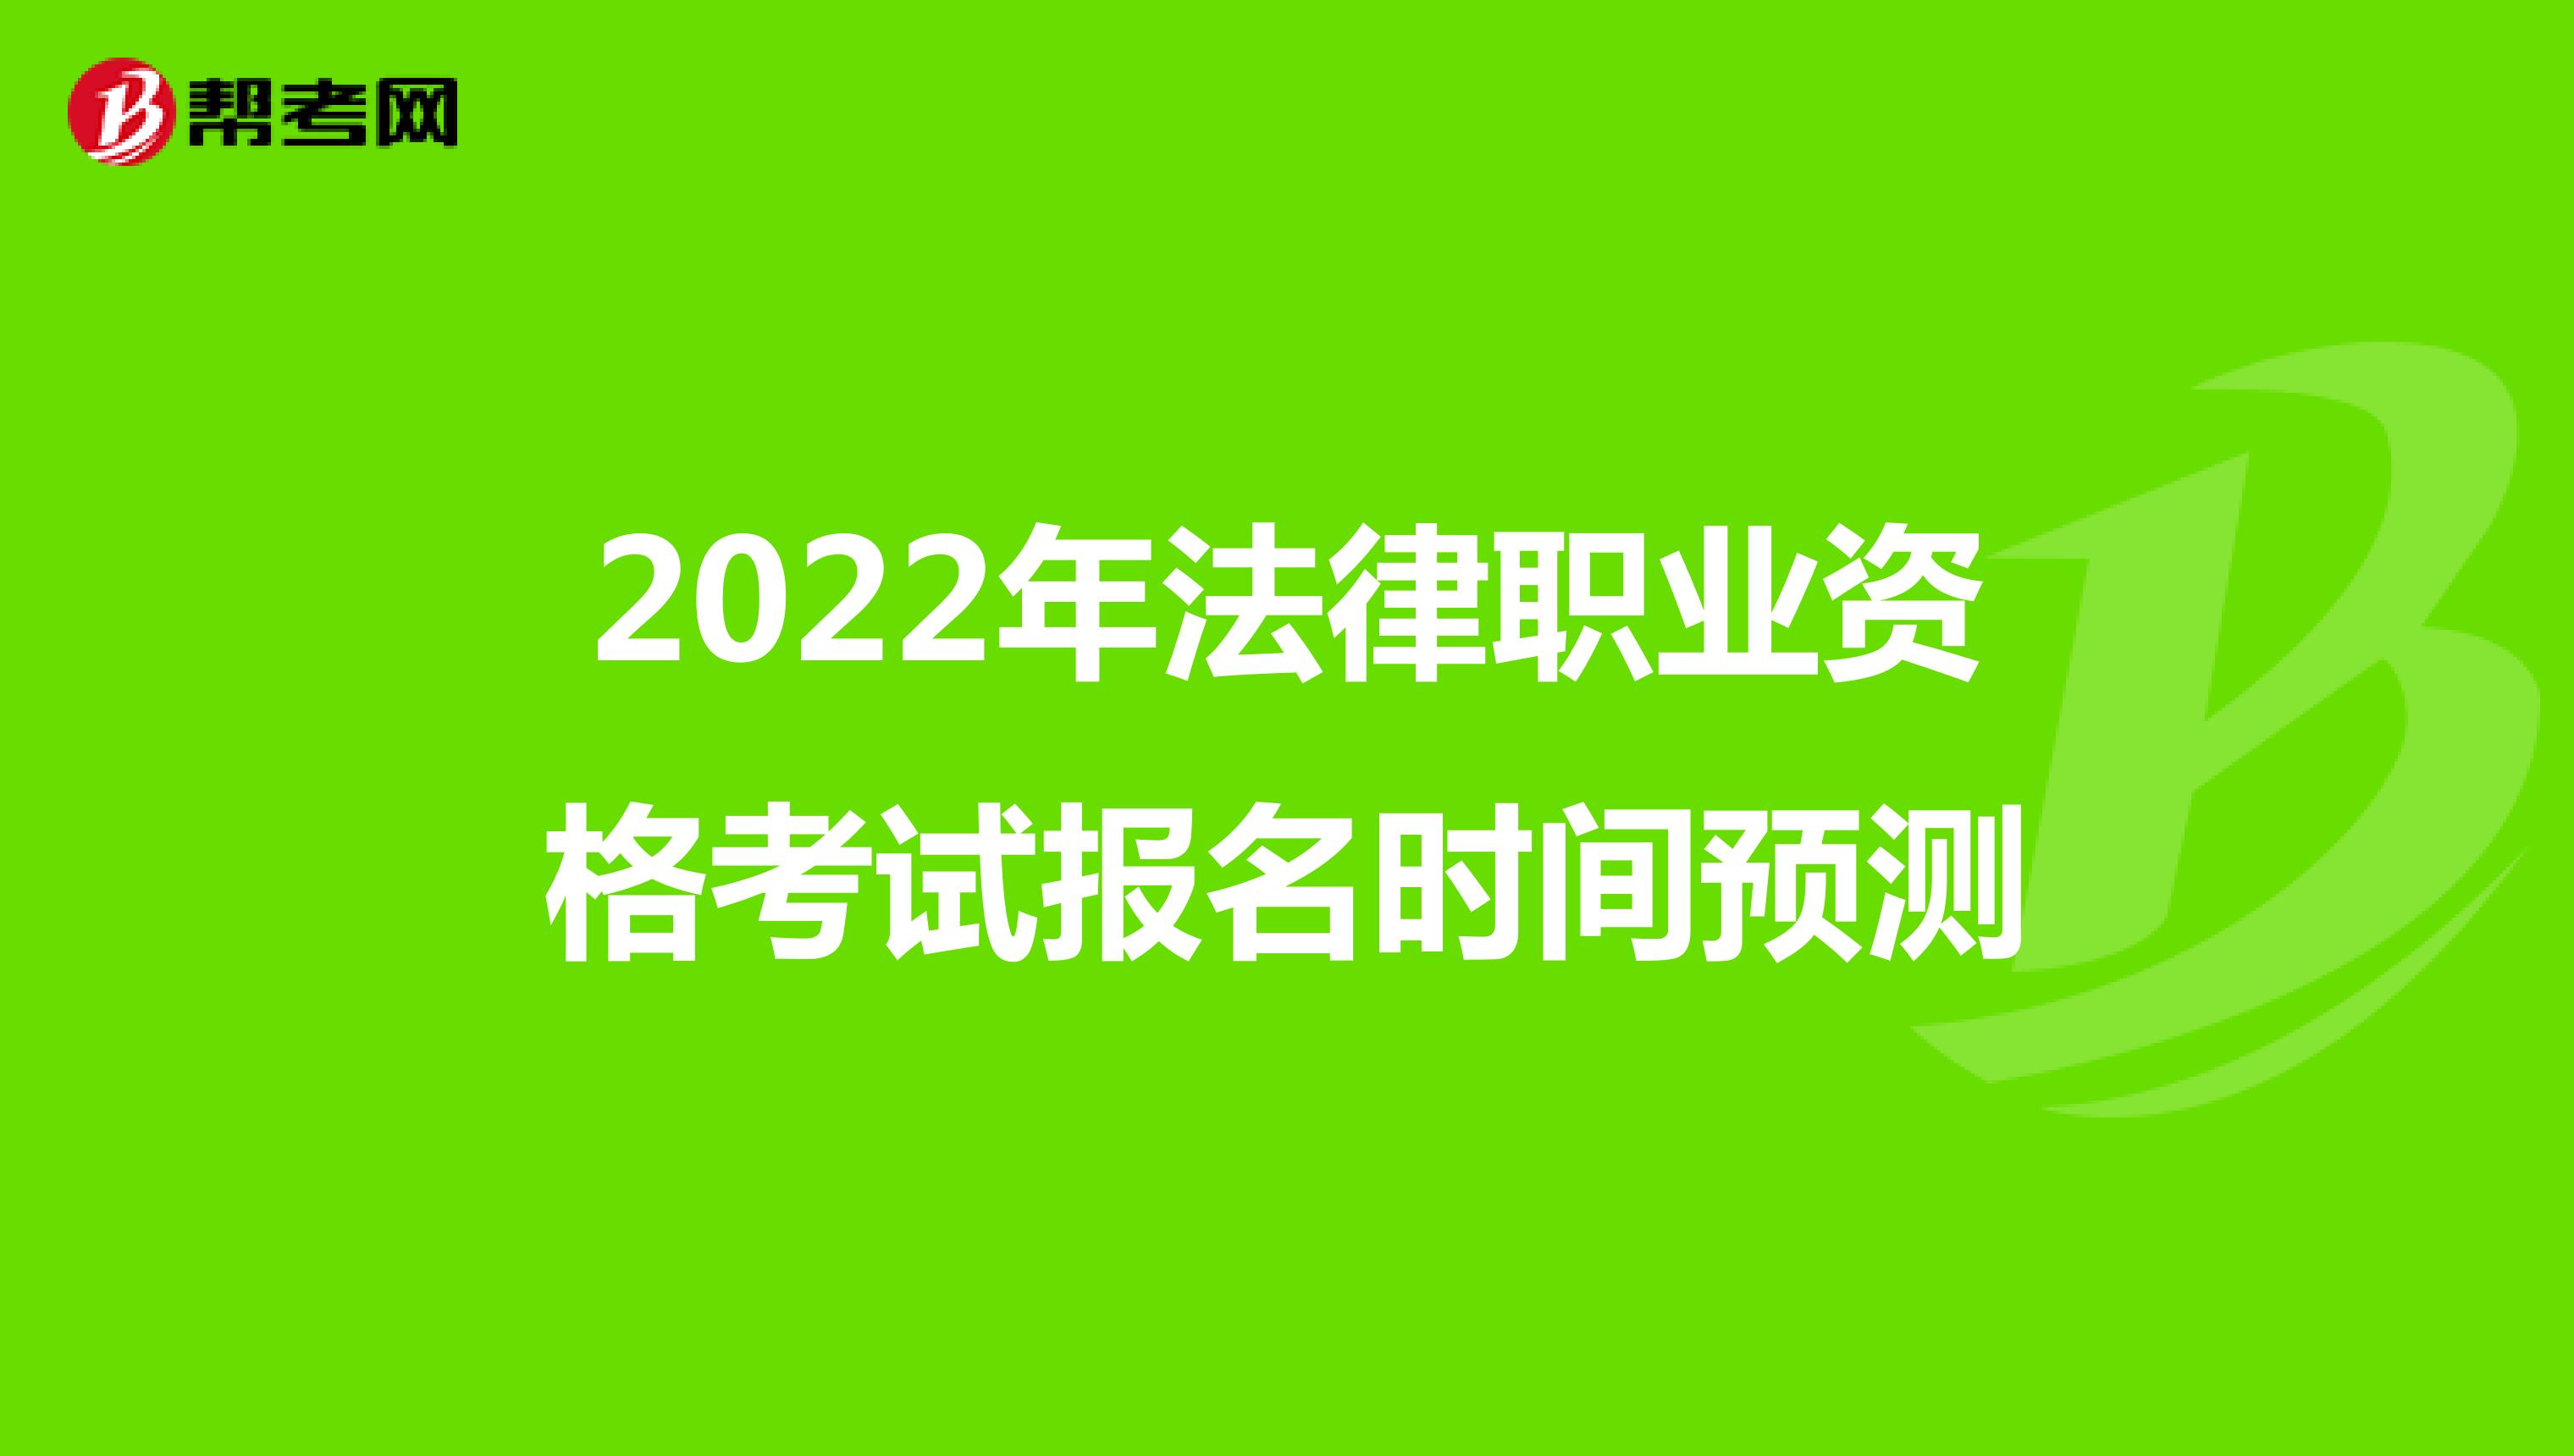 2022年法律职业资格考试报名时间预测